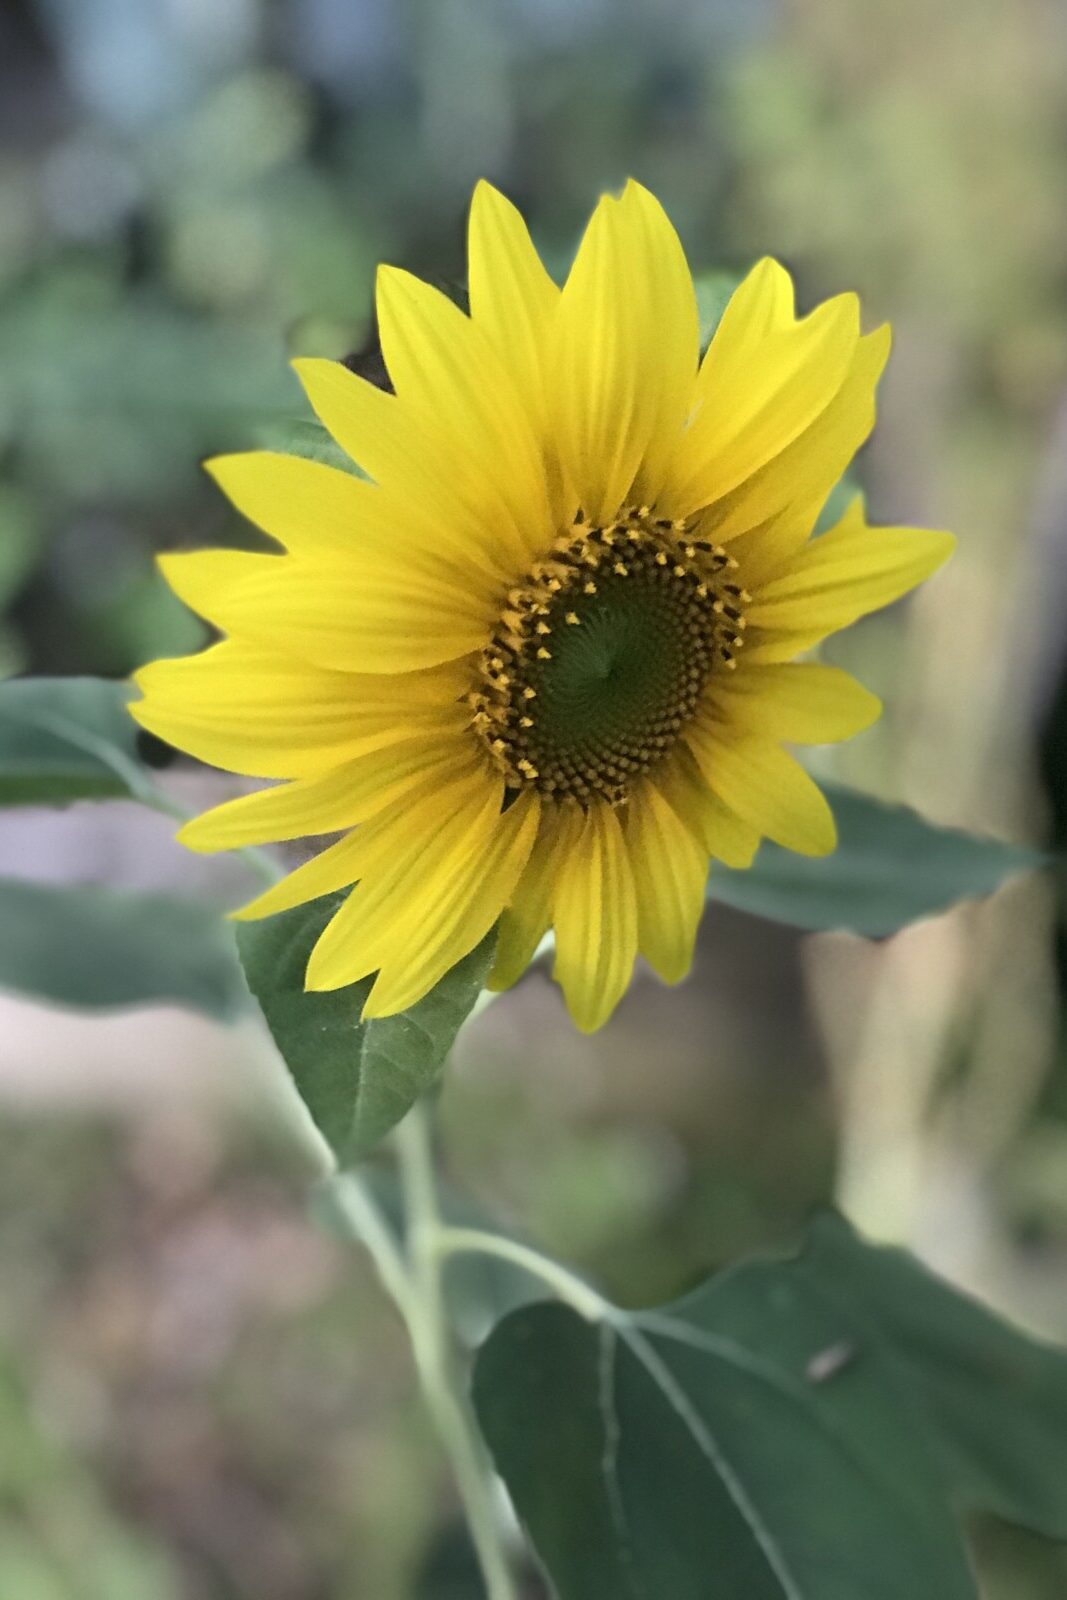 Sunflower-pepper-plants-article-edited.jpg